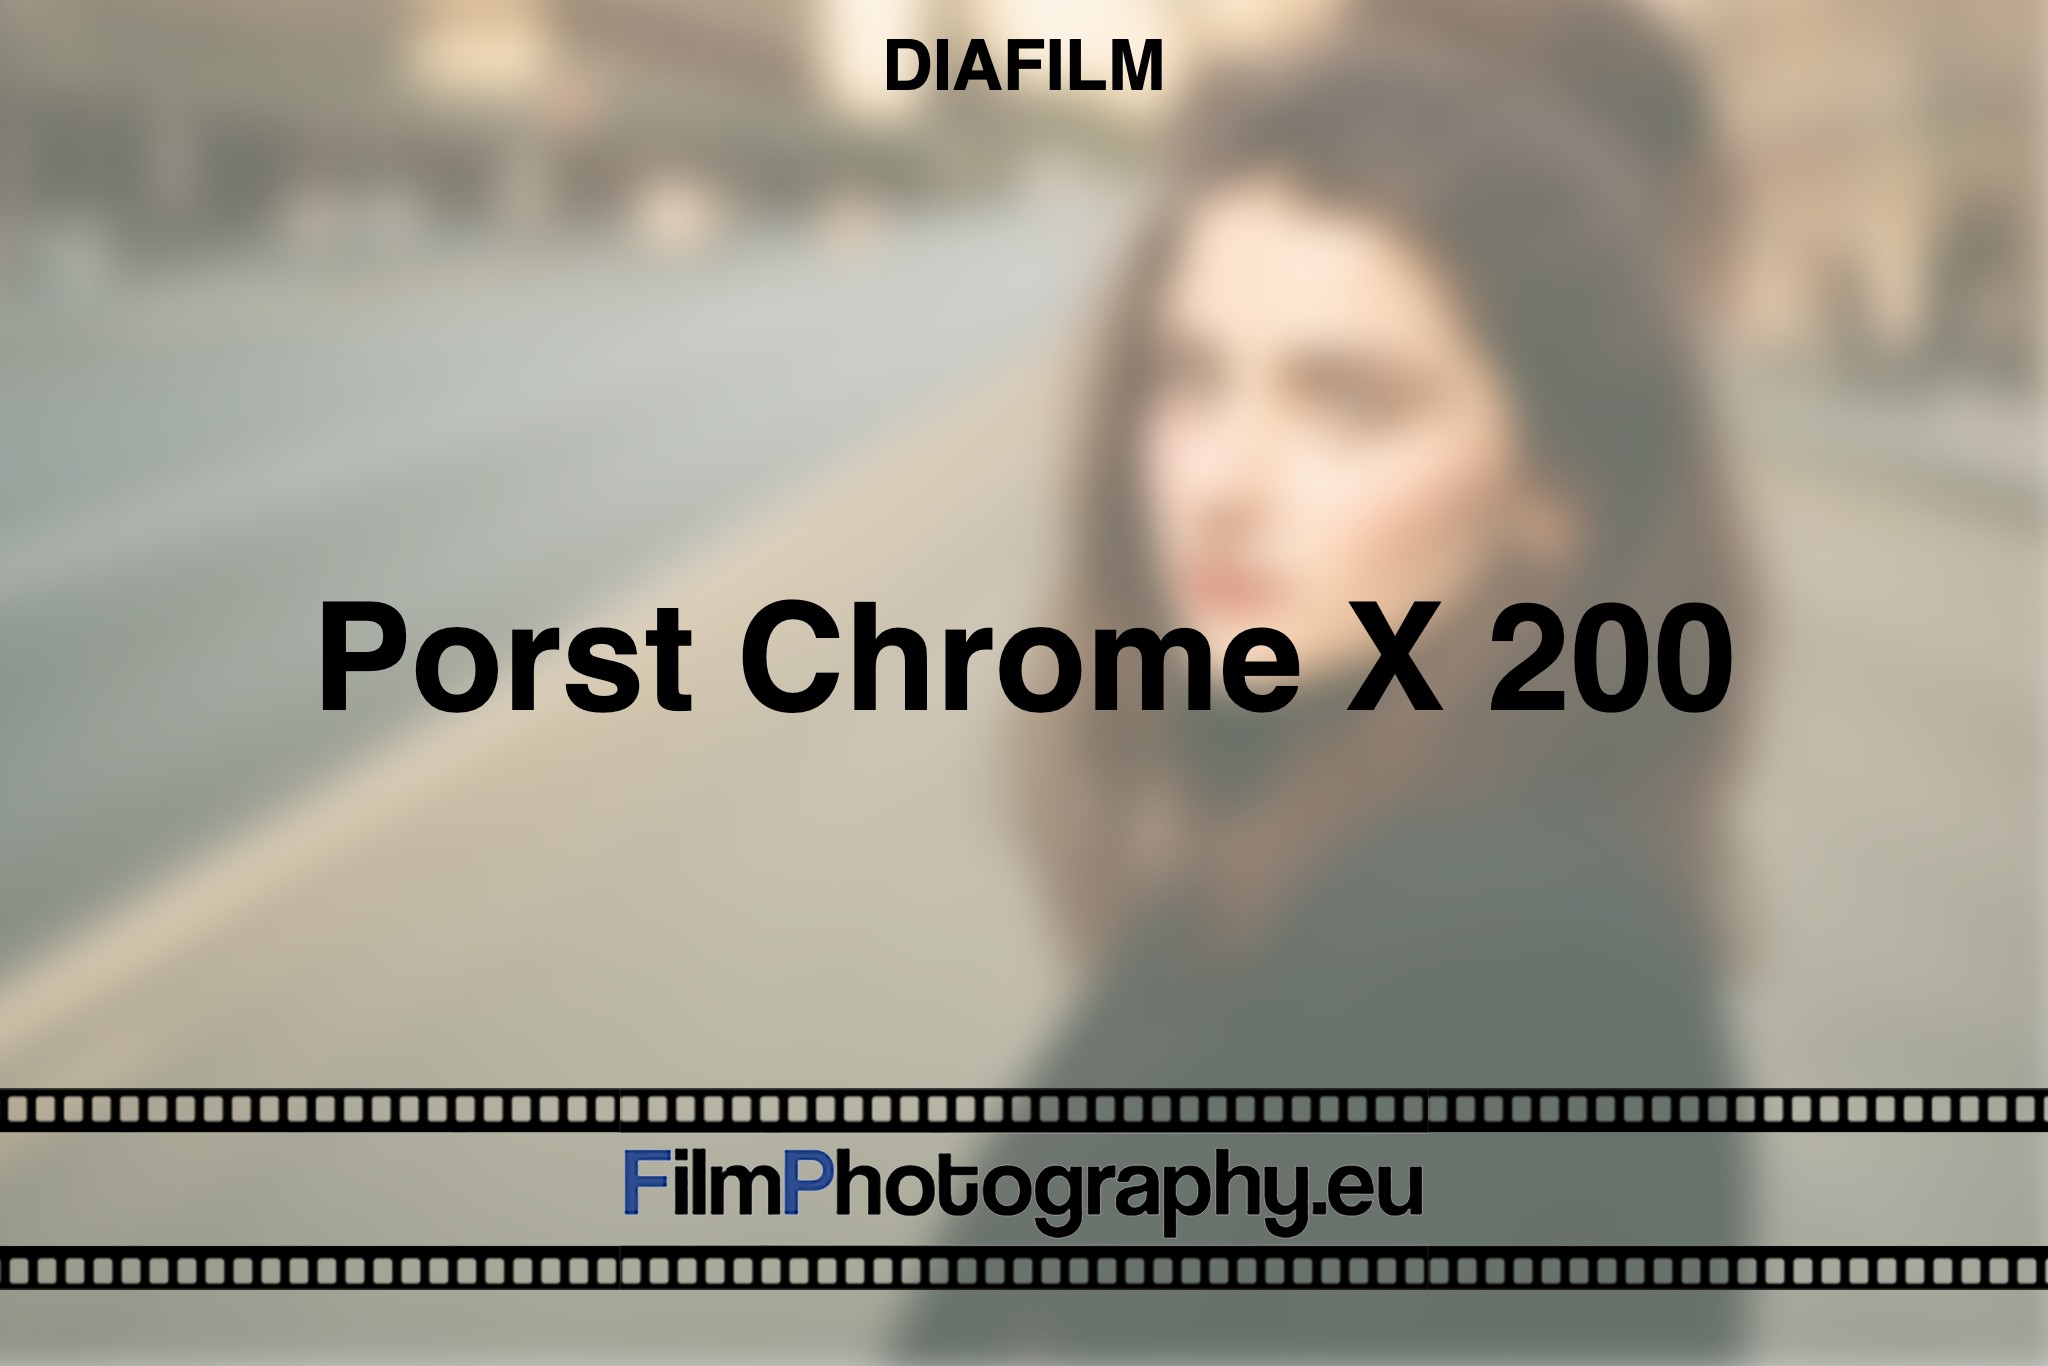 porst-chrome-x-200-diafilm-bnv